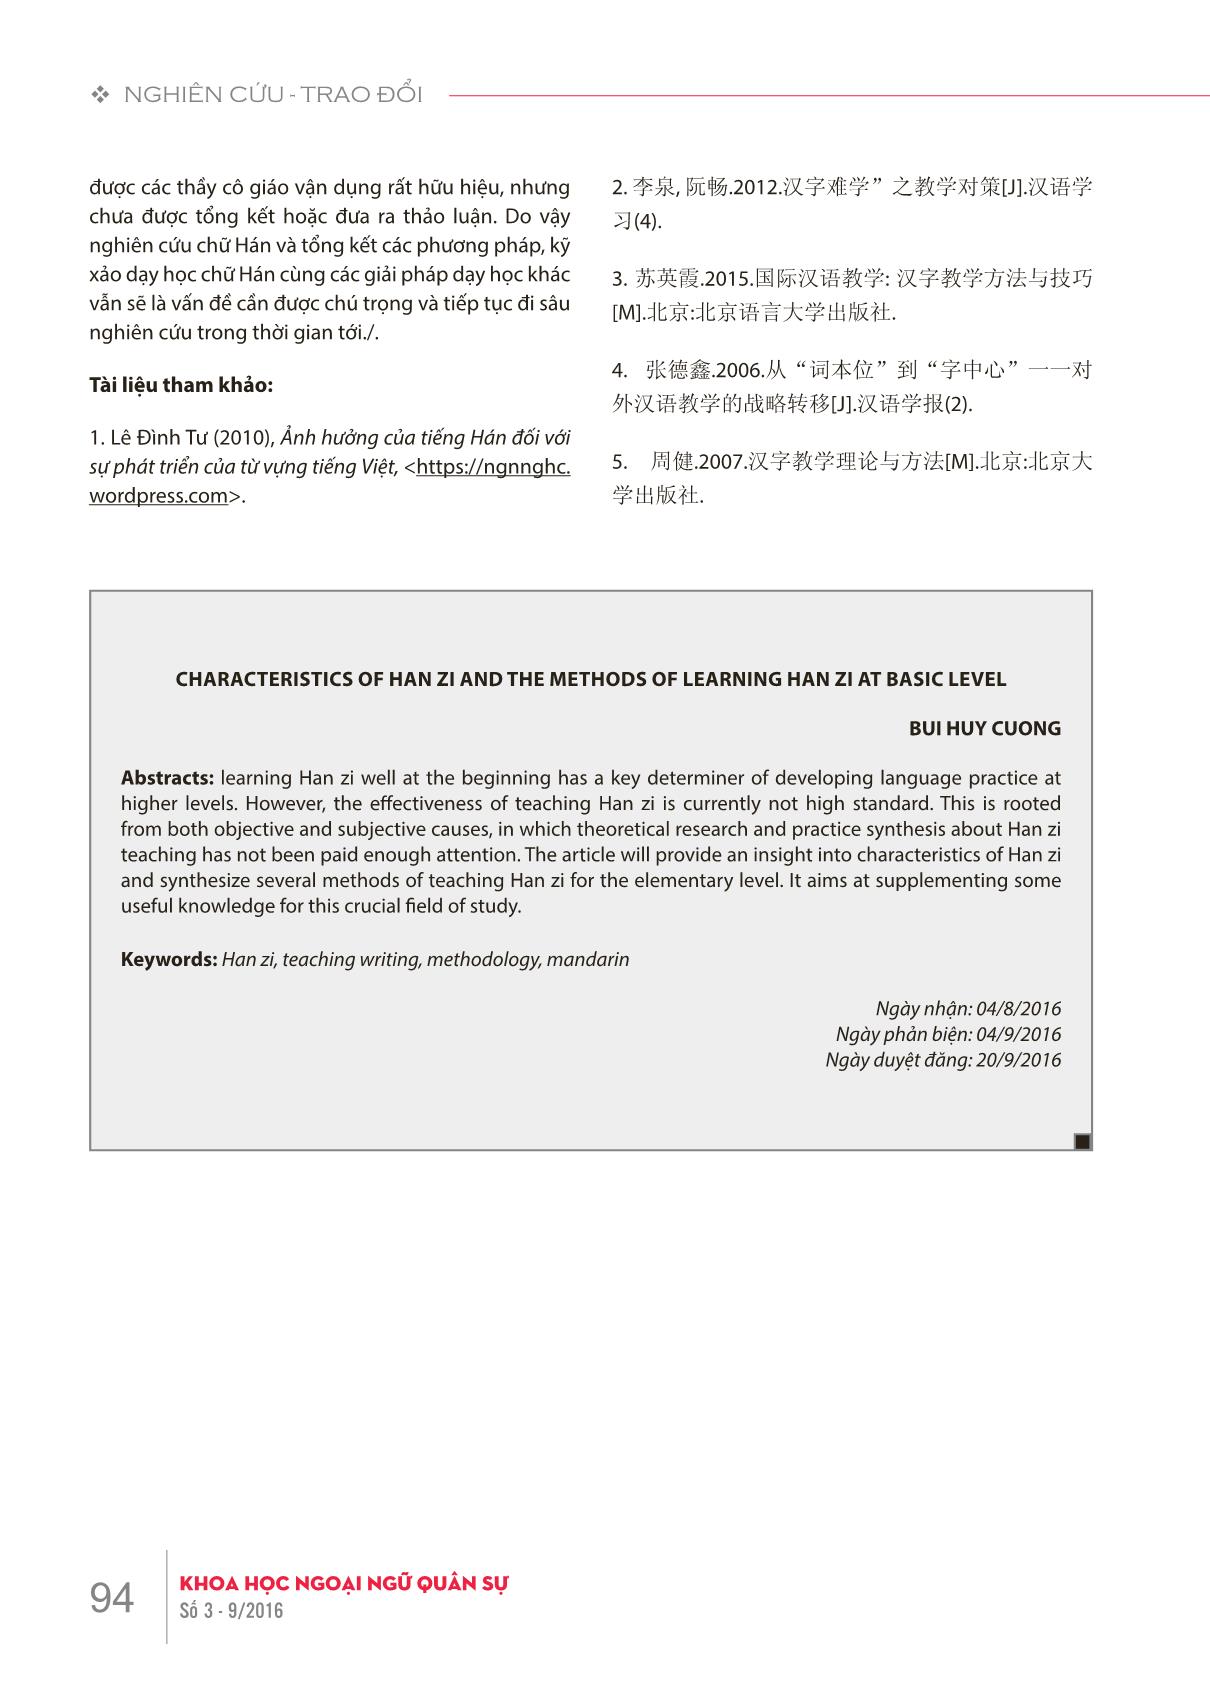 Đặc điểm chữ hán và phương pháp dạy học chữ Hán giai đoạn cơ sở trang 7